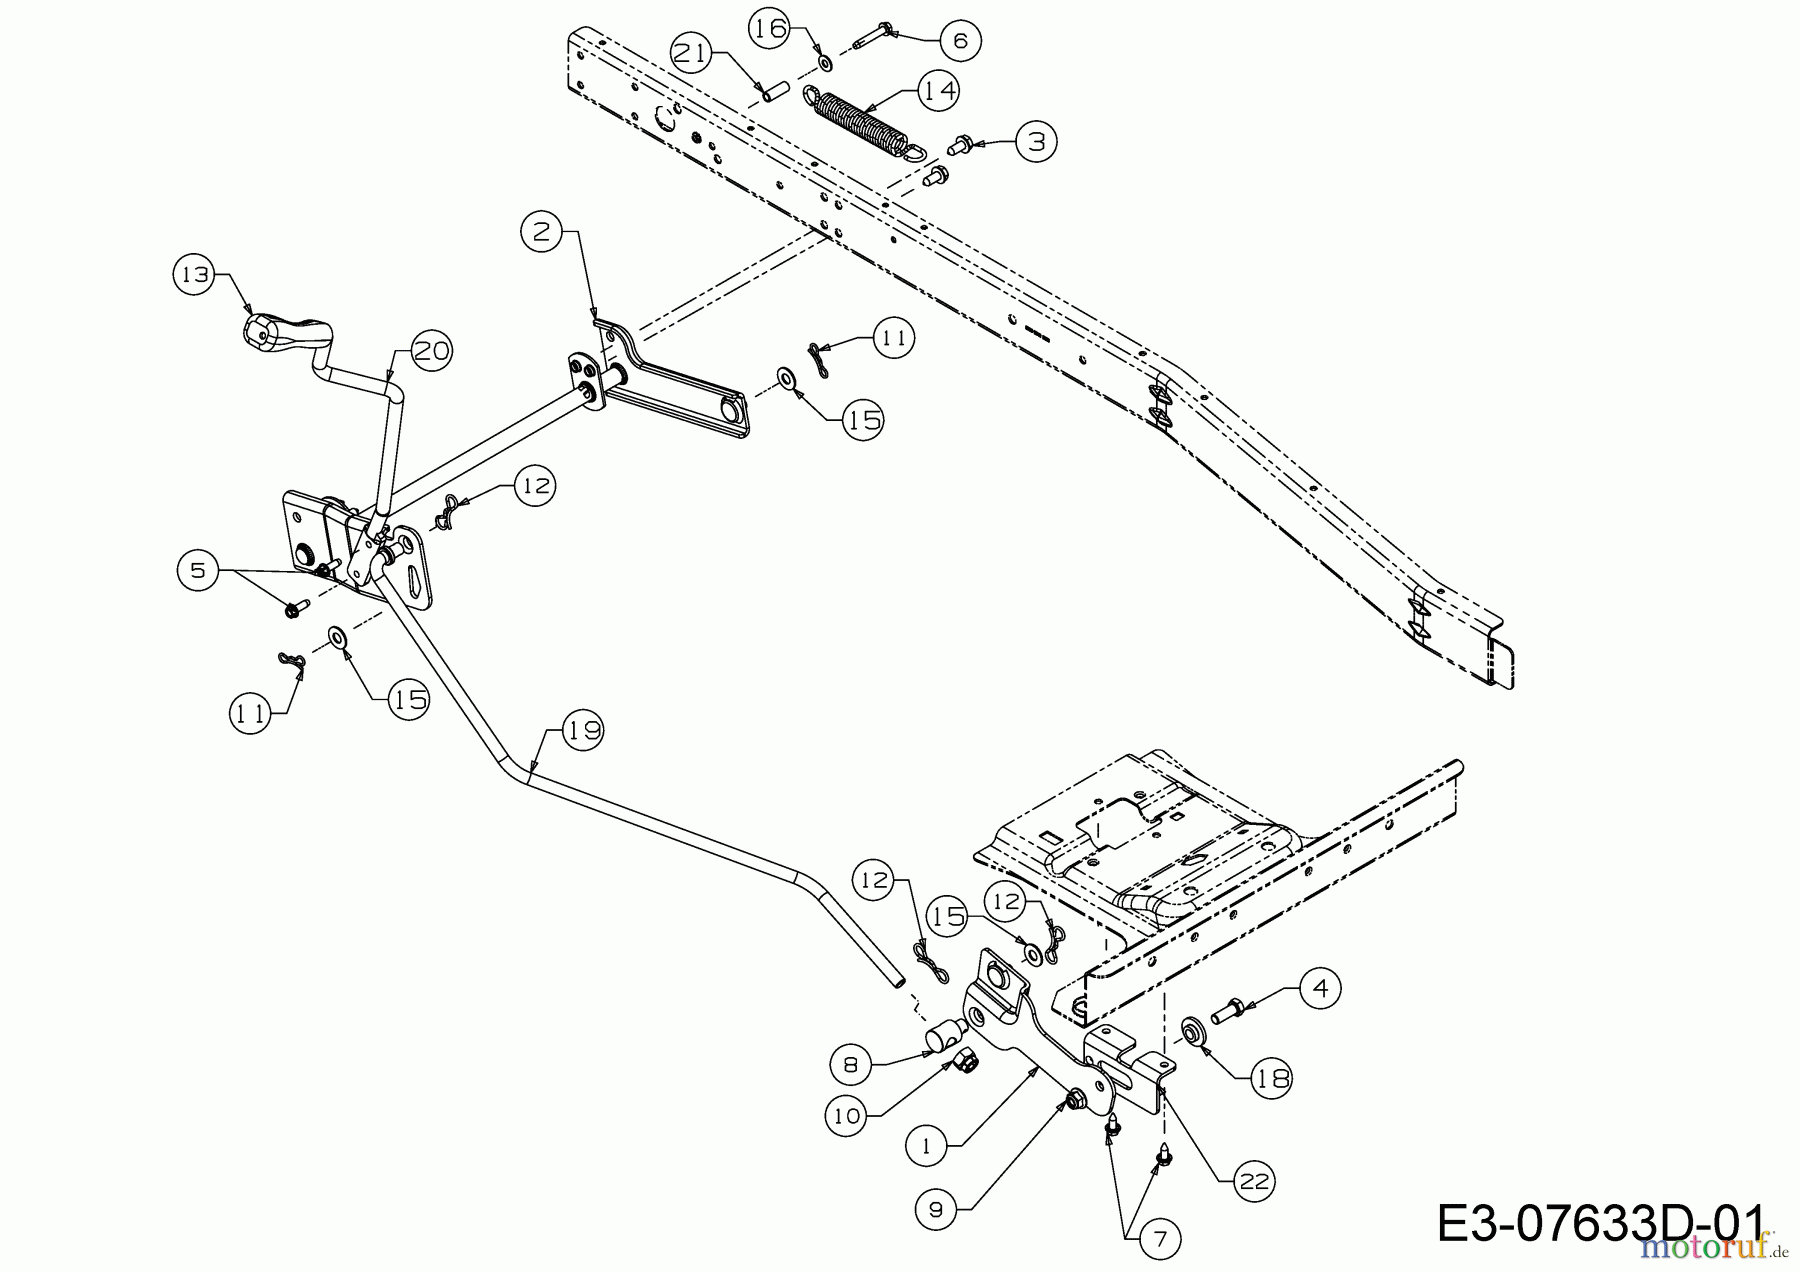  WOLF-Garten Expert Rasentraktoren Expert Scooter Pro 13B226HD650  (2015) Mähwerksaushebung